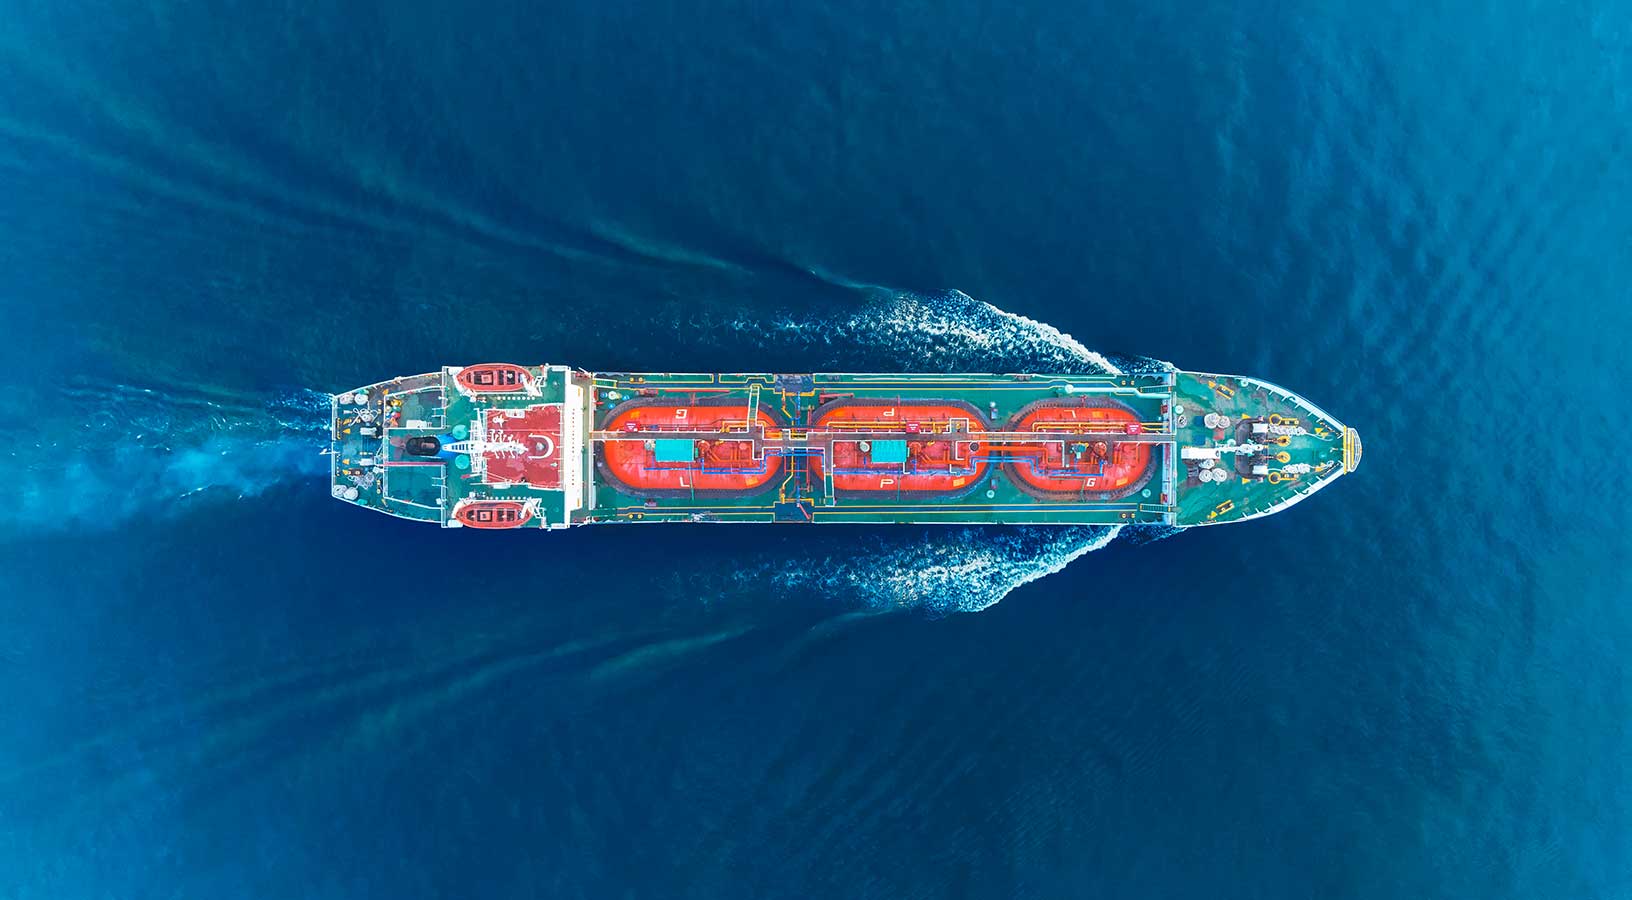 Vista aerea di una nave da dragaggio che naviga a destra dell'immagine.